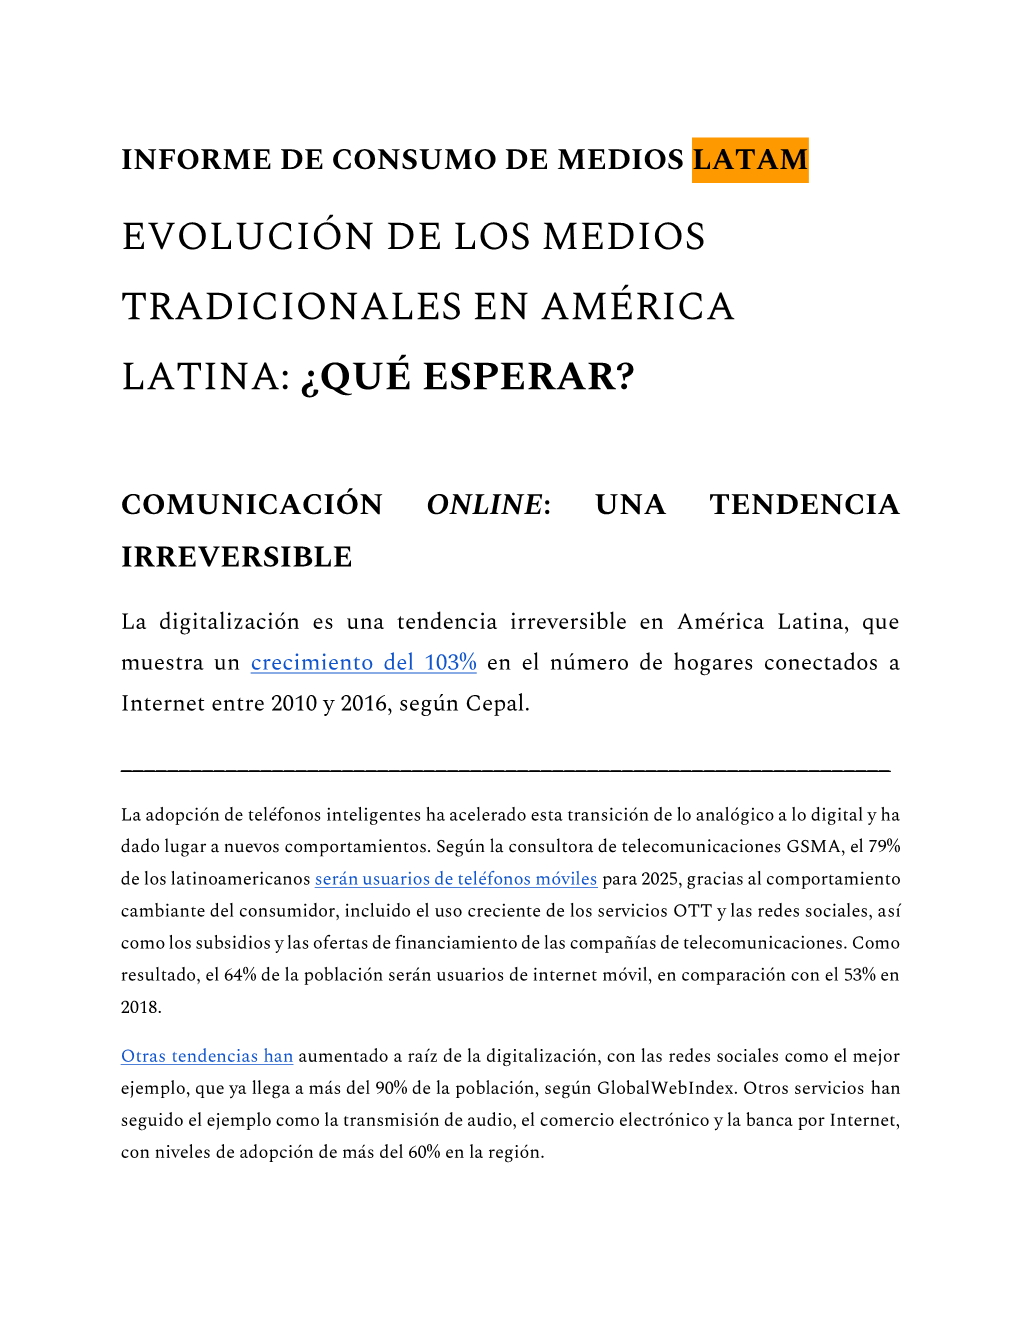 Evolución De Los Medios Tradicionales En América Latina: ¿Qué Esperar?